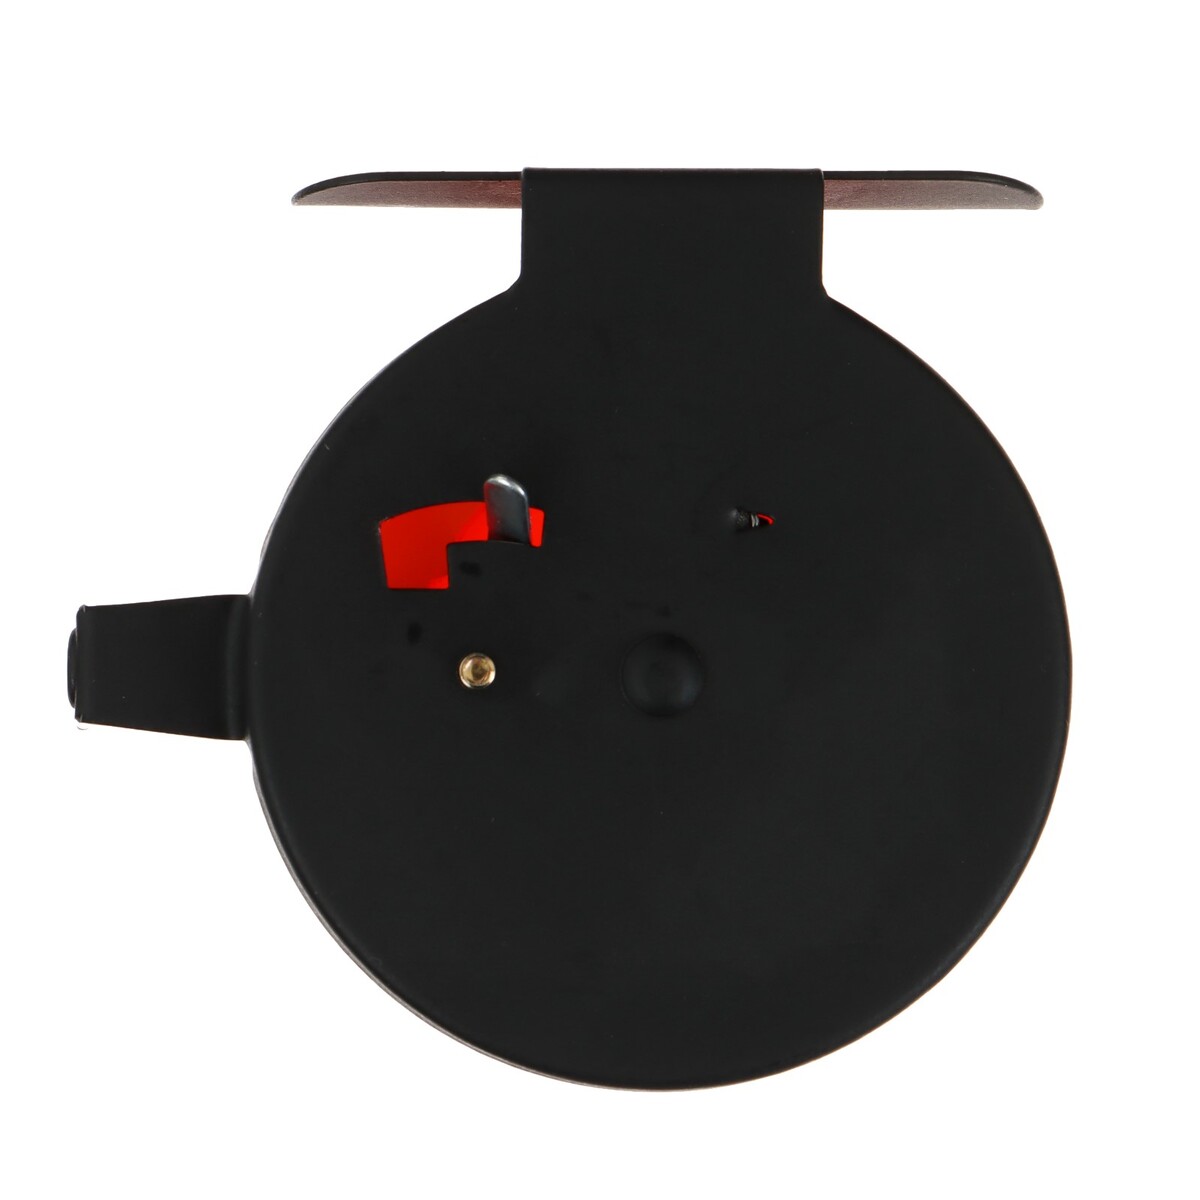 Катушка инерционная, металл пластик, диаметр 6.5 см, направляющая, черно-оранжевый, 701d No brand, цвет черный 010293703 - фото 5